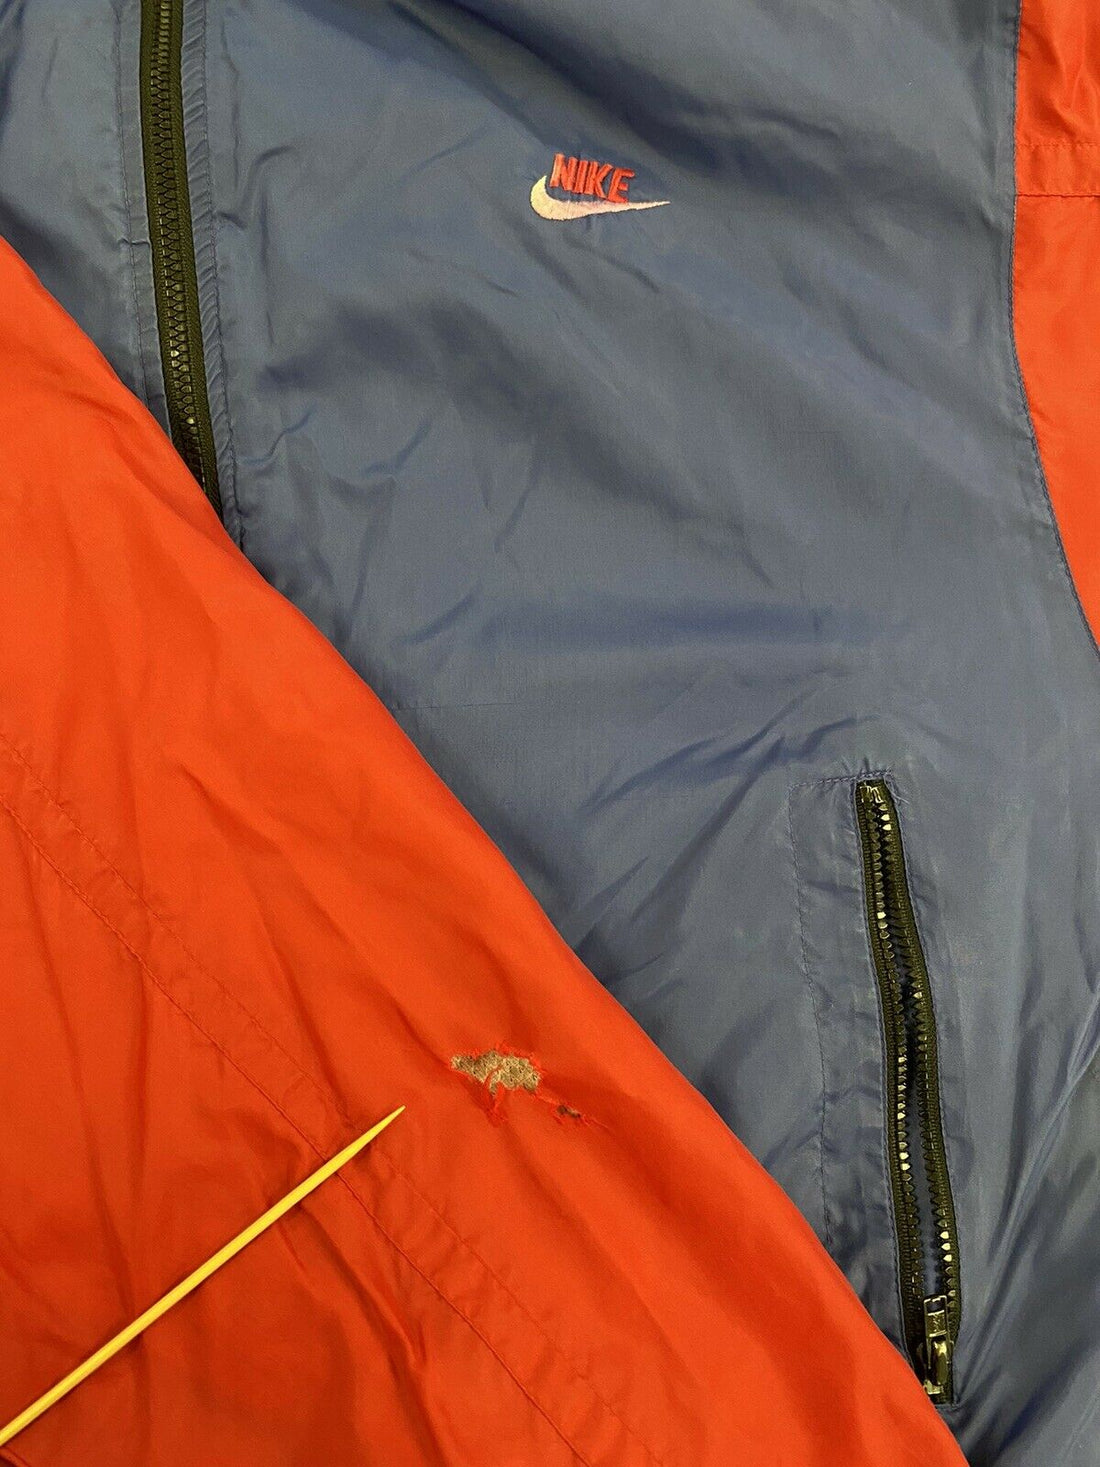 Vintage Nike Windbreaker Jacket Size Medium Purple & Red 90s Embroidered Swoosh